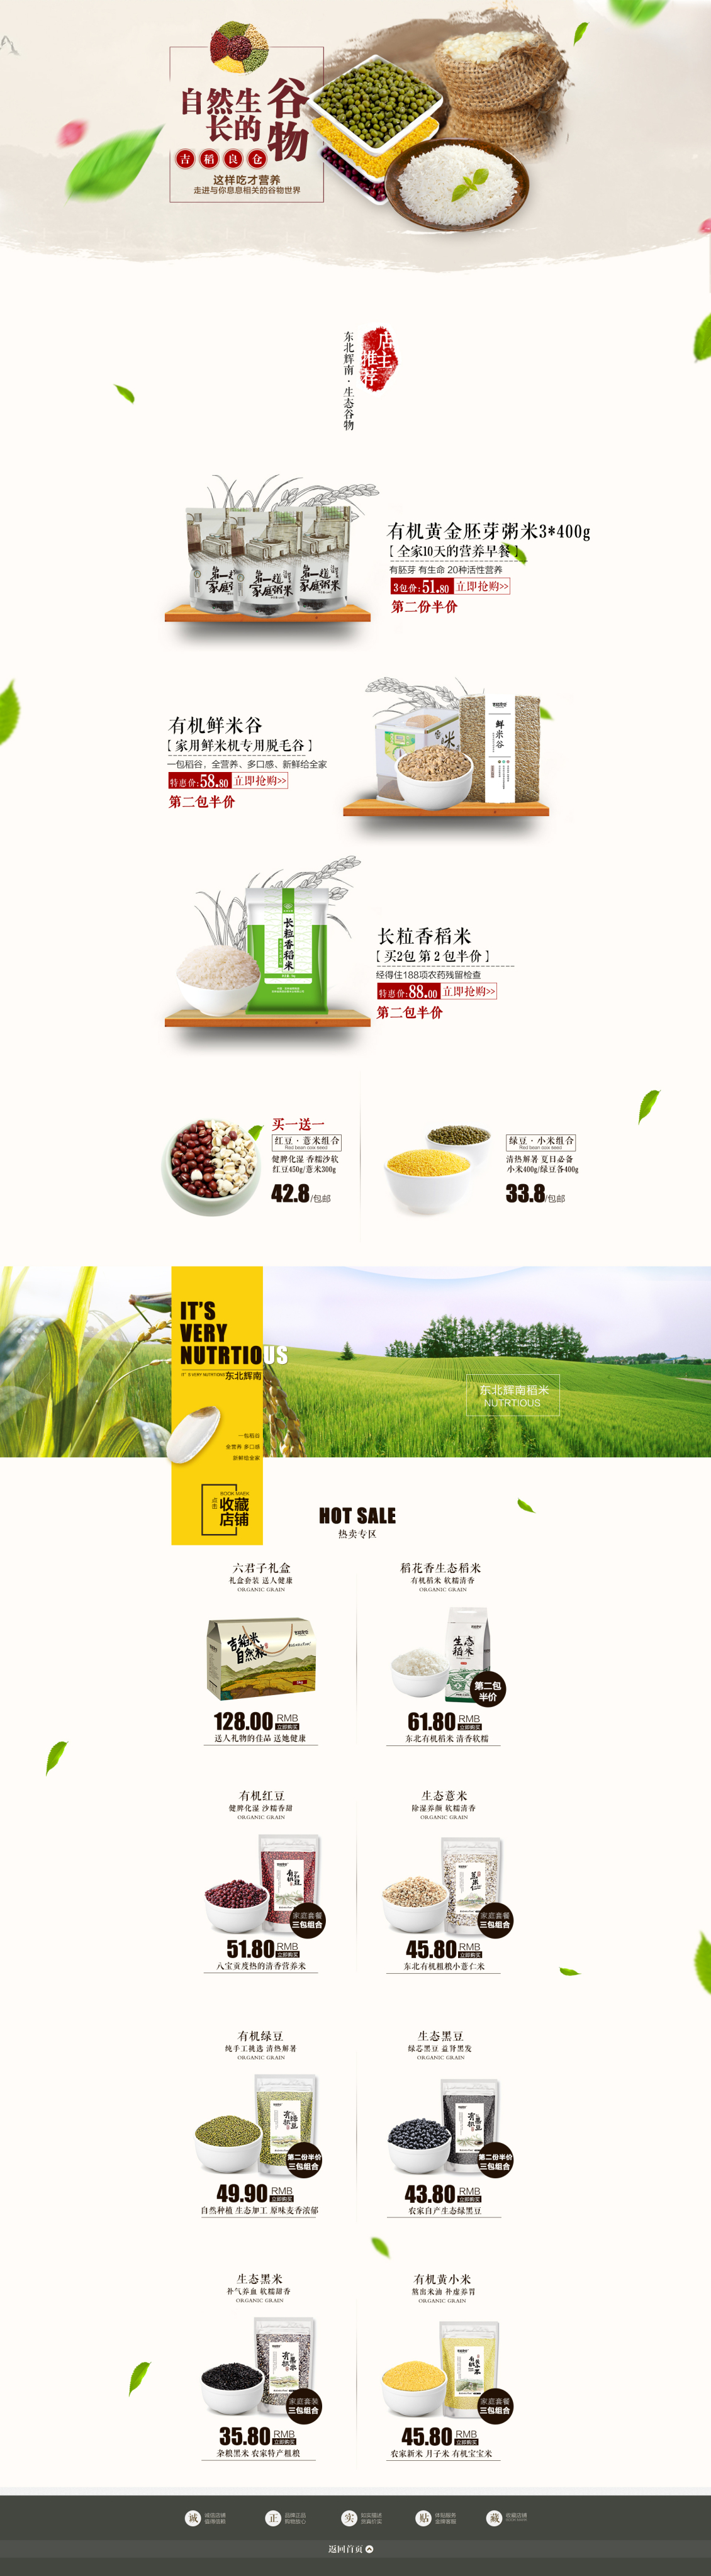 淘宝美工守望自然生长的谷物健康食品绿色首页设计作品